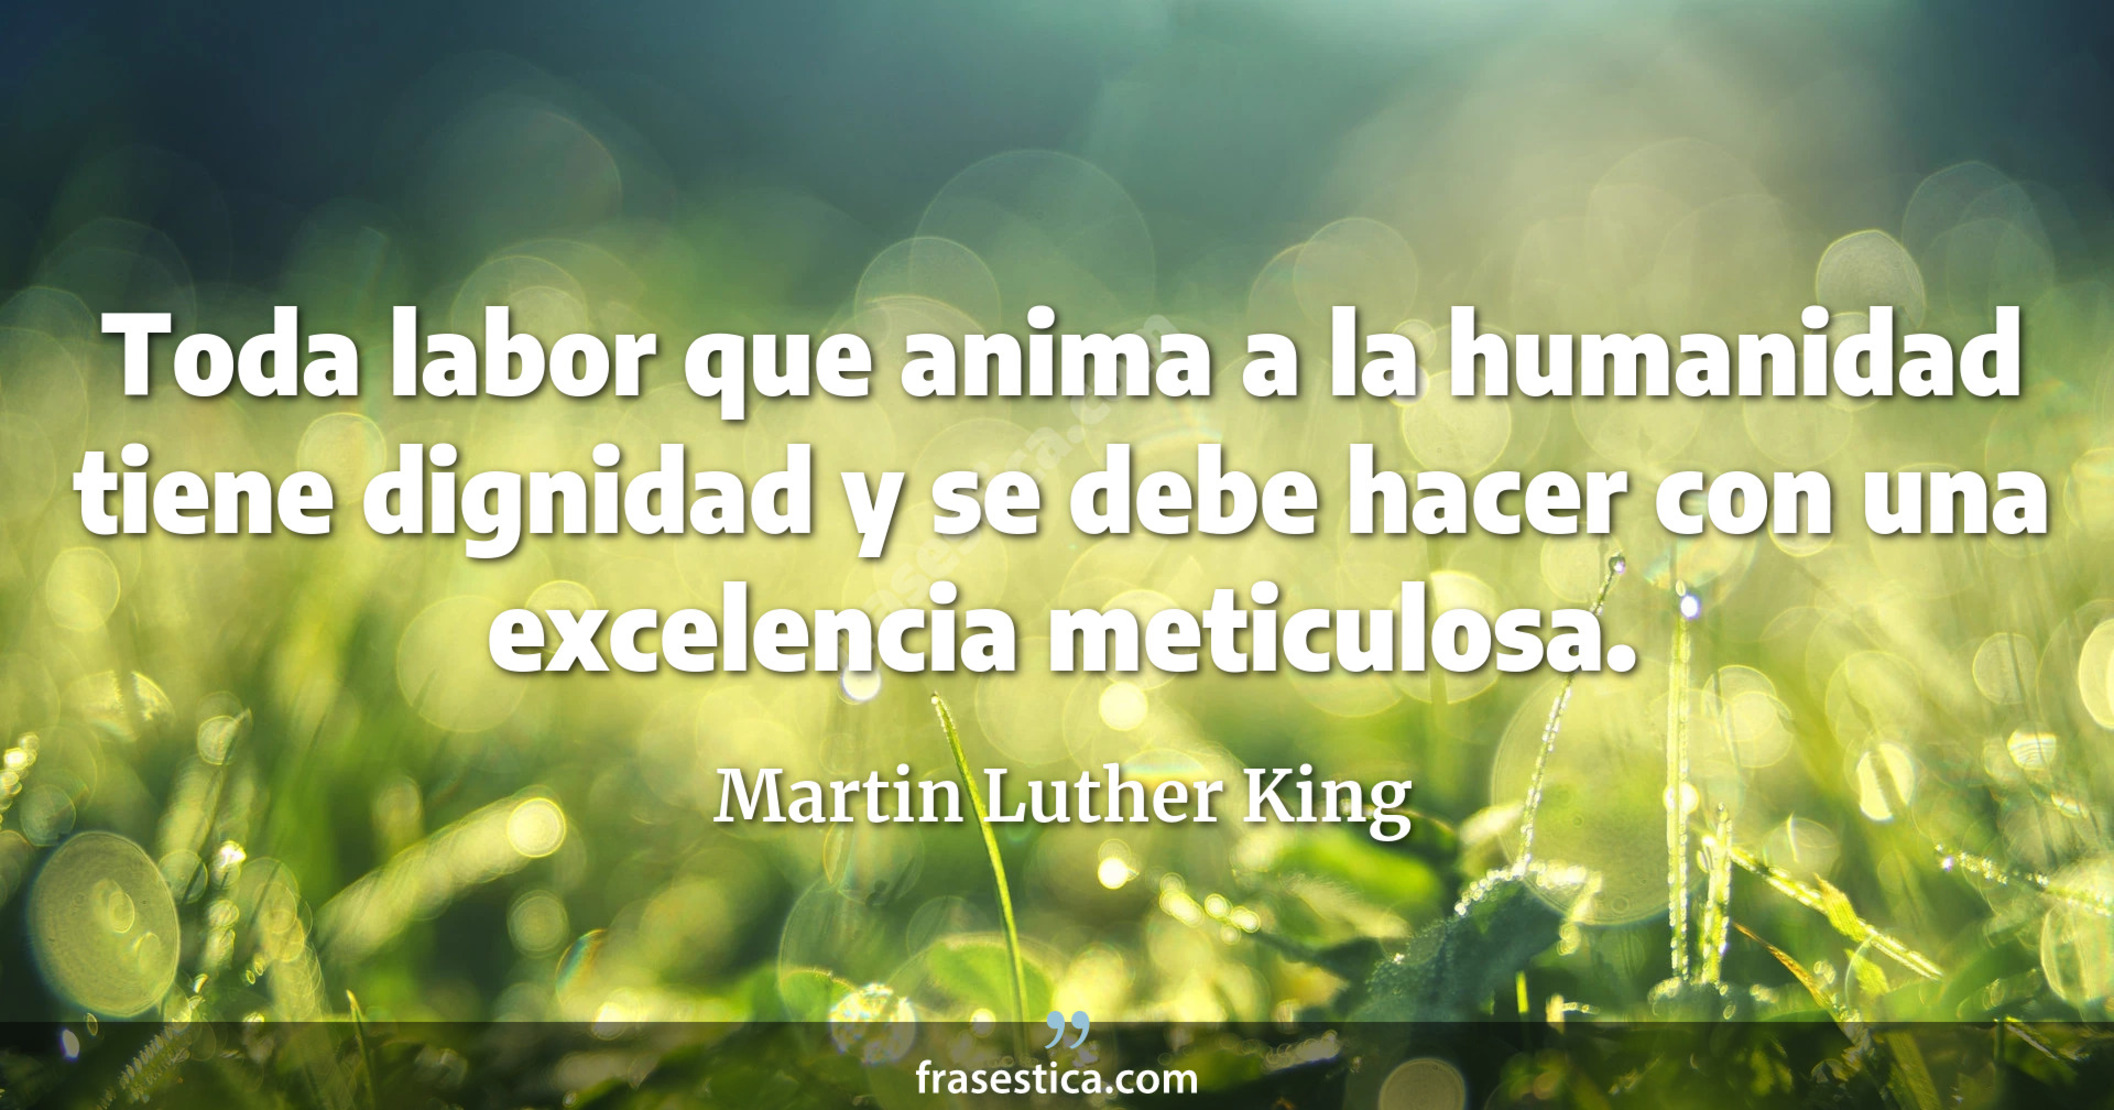 Toda labor que anima a la humanidad tiene dignidad y se debe hacer con una excelencia meticulosa. - Martin Luther King